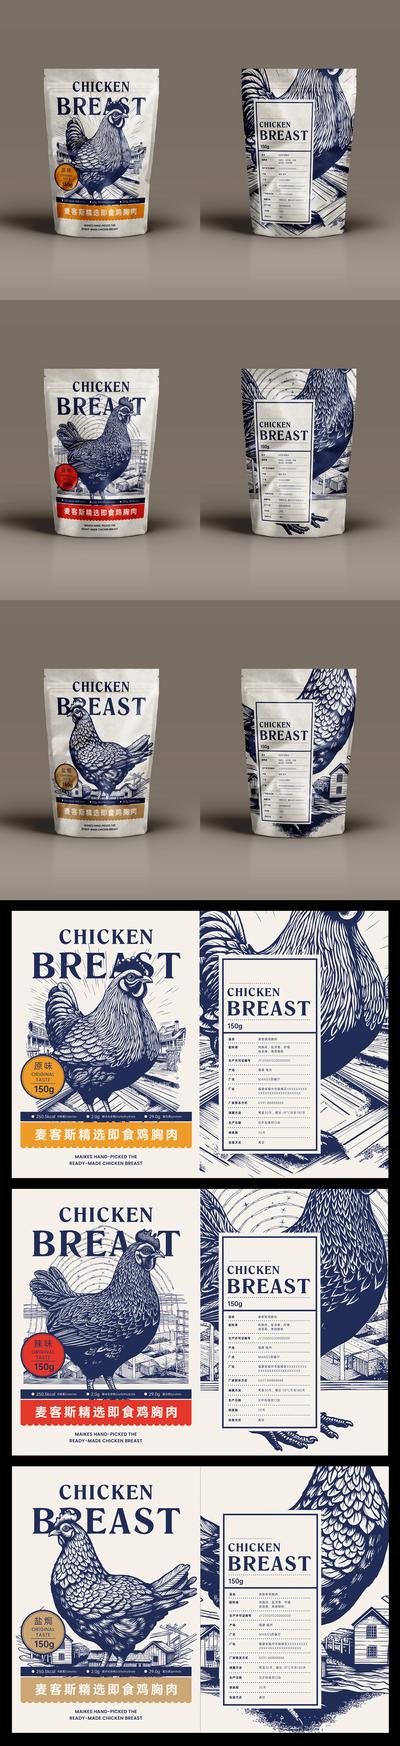 南门网 广告 物料 样机 包装 鸡胸肉 简约 牧场 农场 减肥 食品 农产品 鸡肉 公鸡 鸡 手绘 版画 即食 代餐 减脂